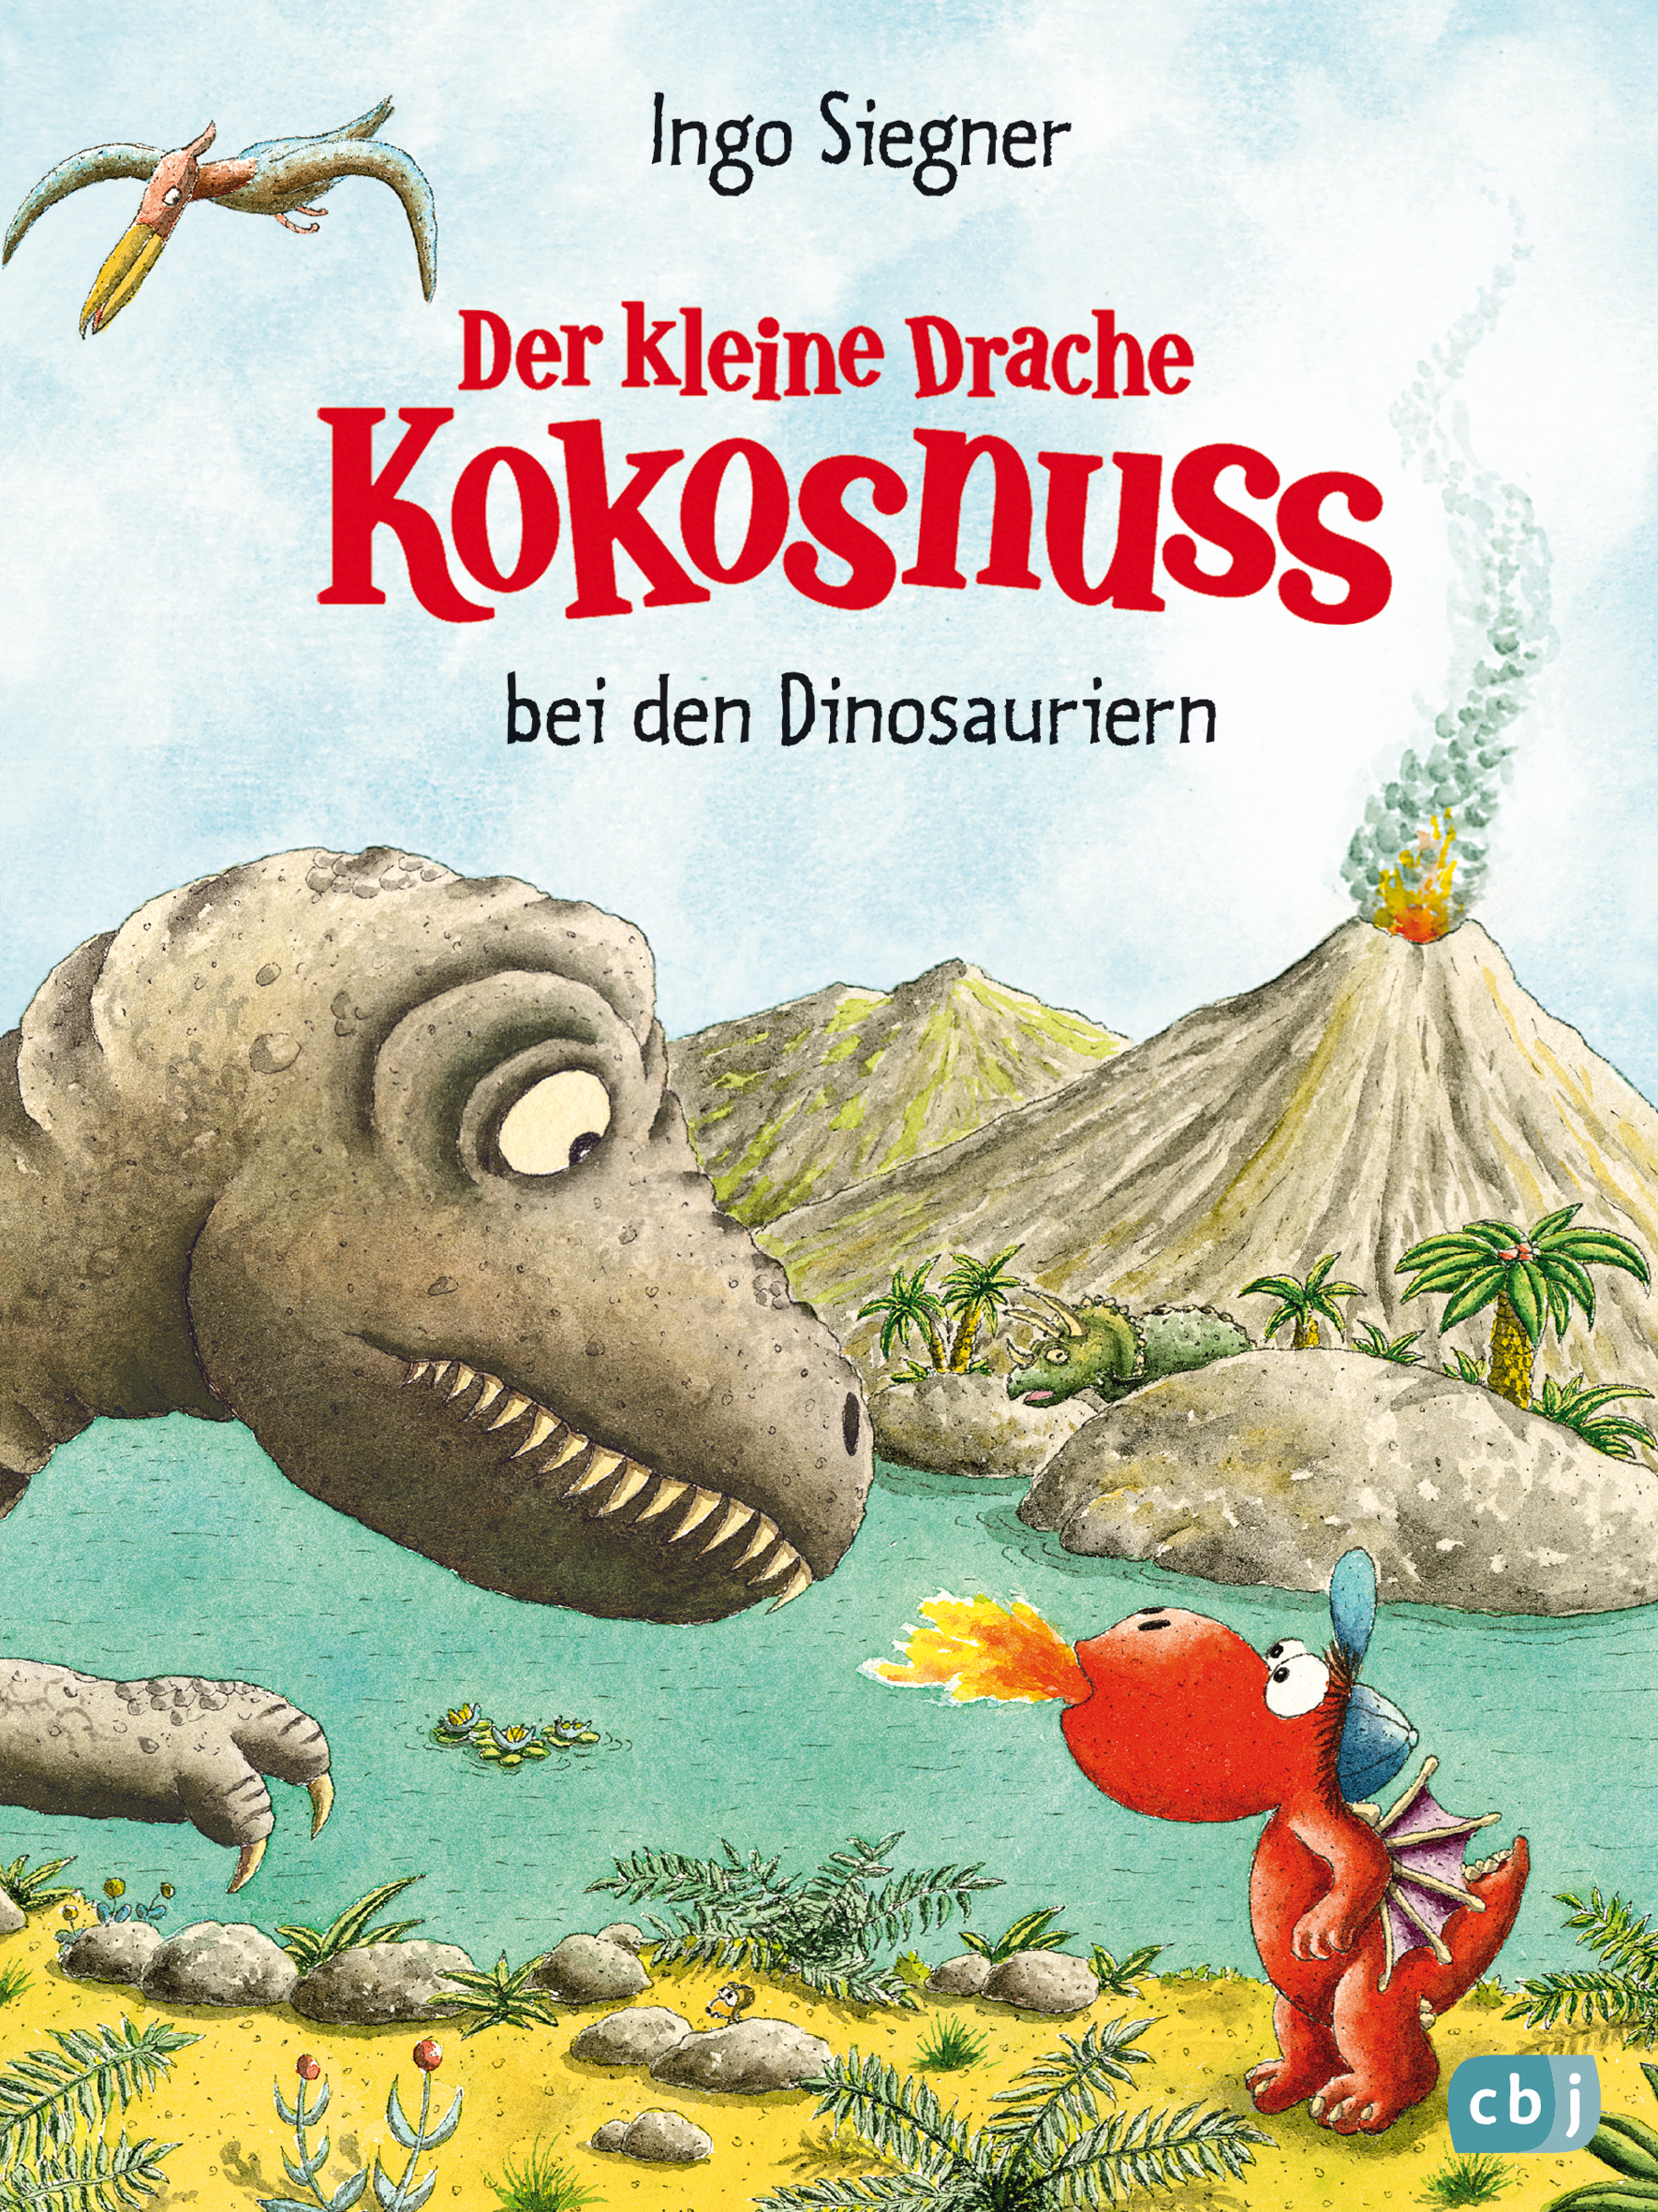 DKN Bd.20 Kokosnuss bei den Dinosauriern, Nr: 022/15660